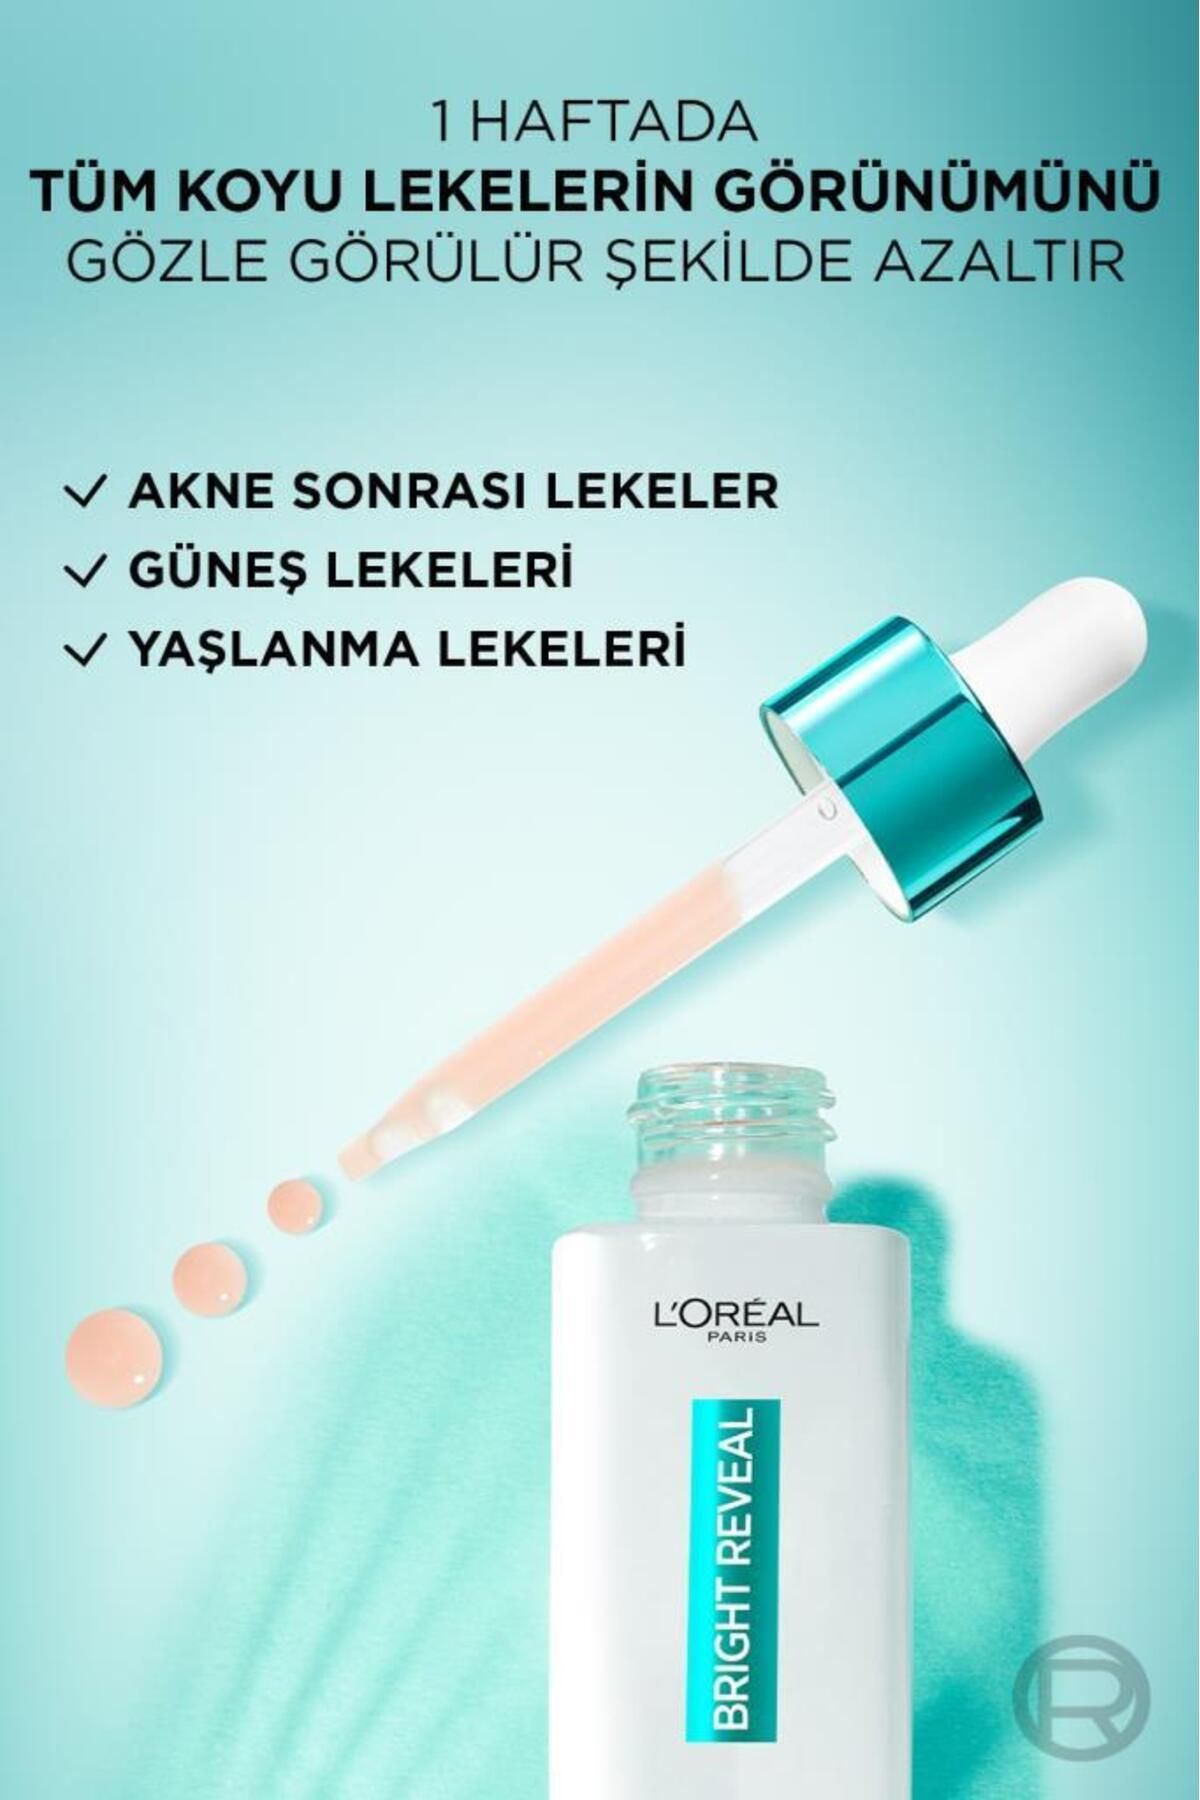 L'Oreal Paris روشن کردن روشن کردن ضد لک و کرم ضد آفتاب مجموعه محصولات مراقبت از پوست